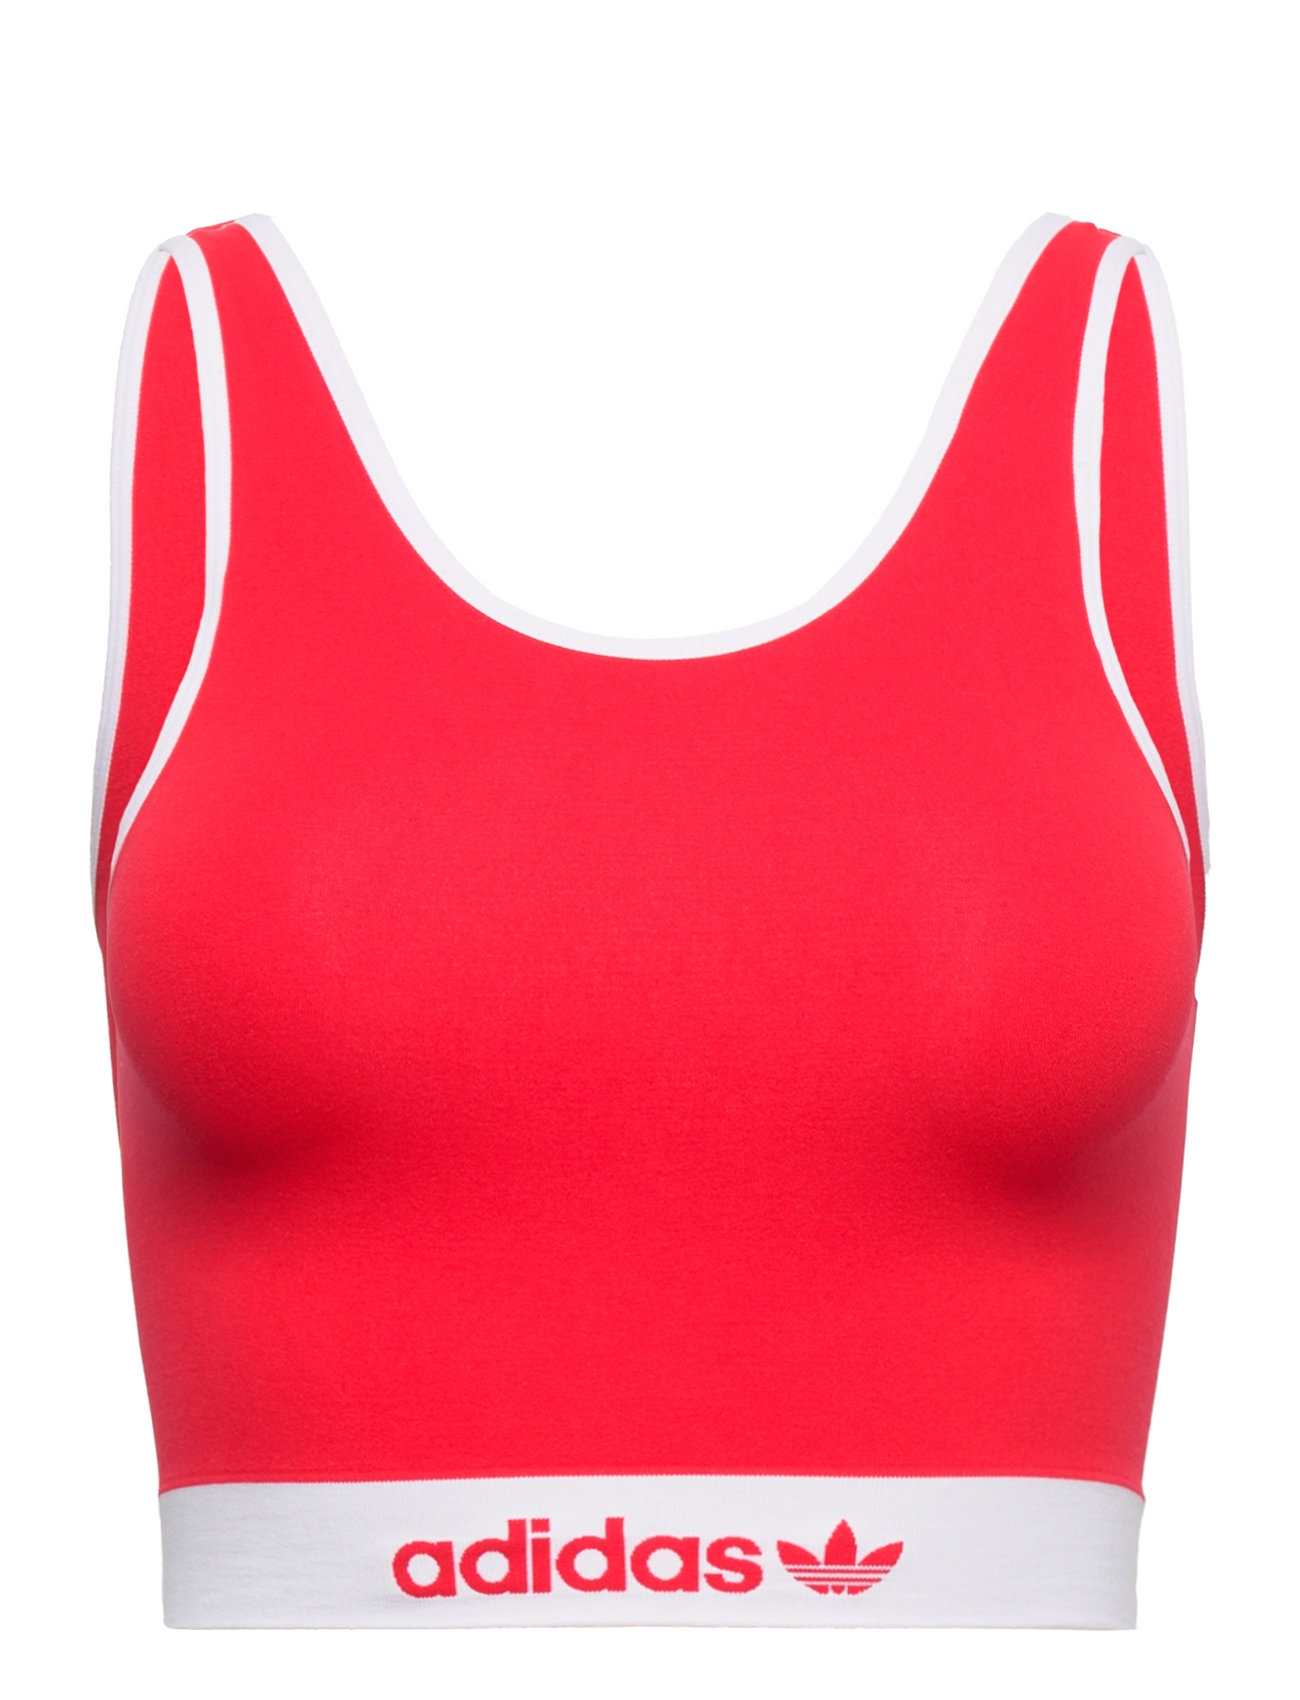 Bustier Sport Bras & Tops Sports Bras - All Red Adidas Originals Underwear